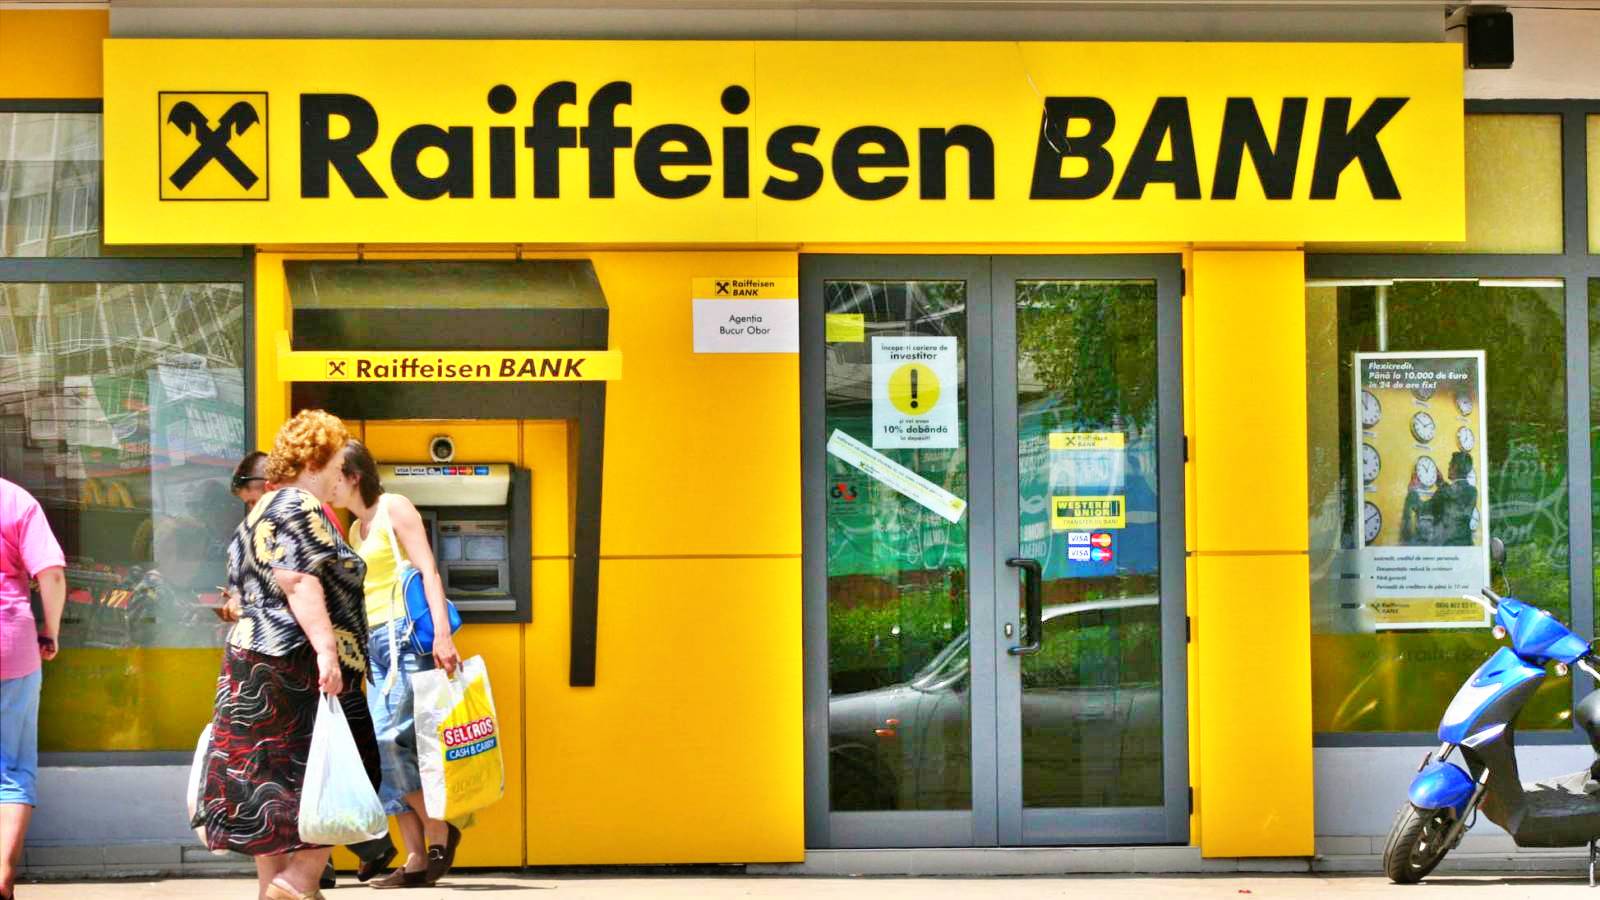 Raiffeisen Bank revolution